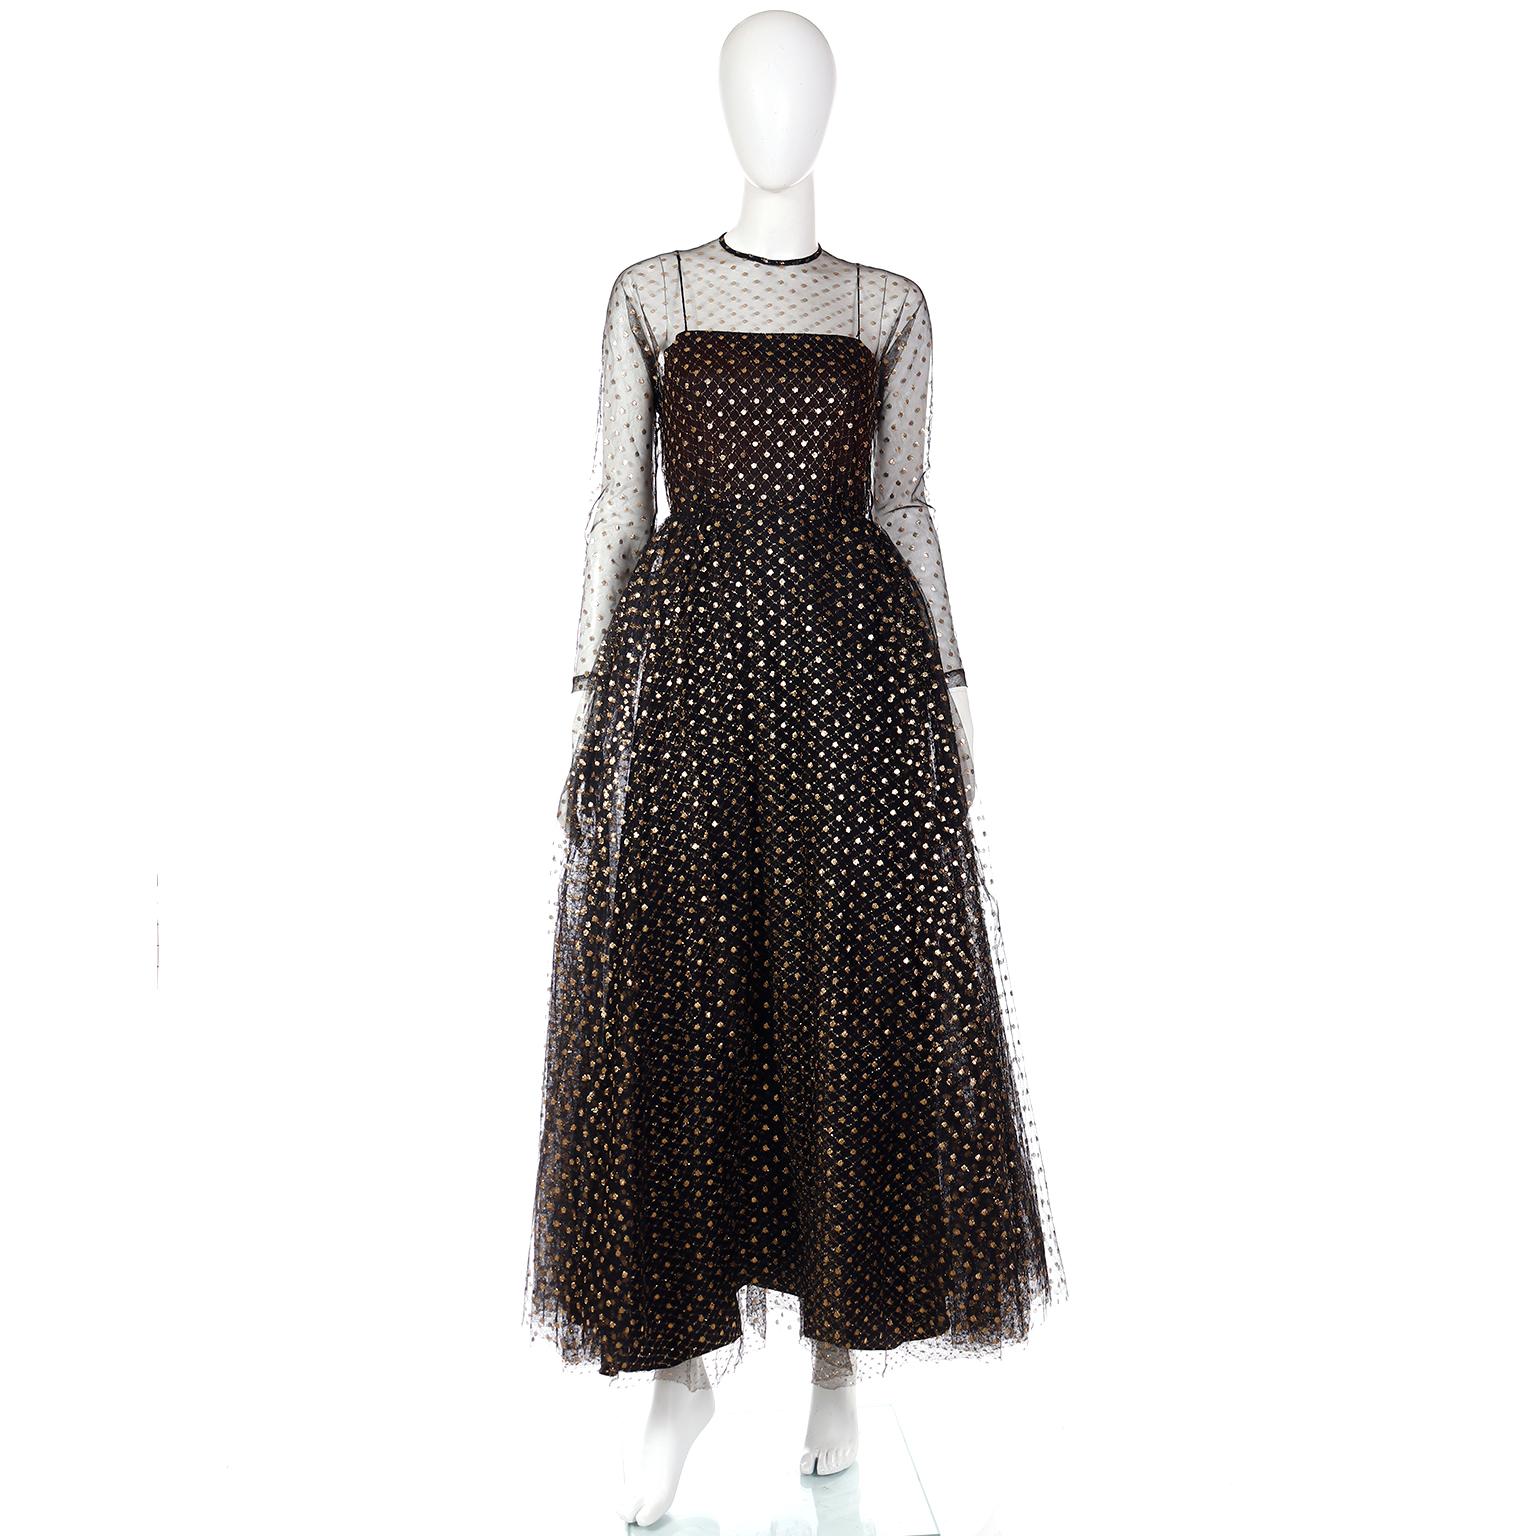 Dies ist eine schöne Vintage Lillie Rubin schwarzen Tüll Kleid mit funkelnden goldenen Punkten. Dieses zauberhafte Kleid aus den späten 1970er Jahren hat eine untere Lage aus schwarzem und goldenem Netz mit Rautenmuster und eine obere Lage mit